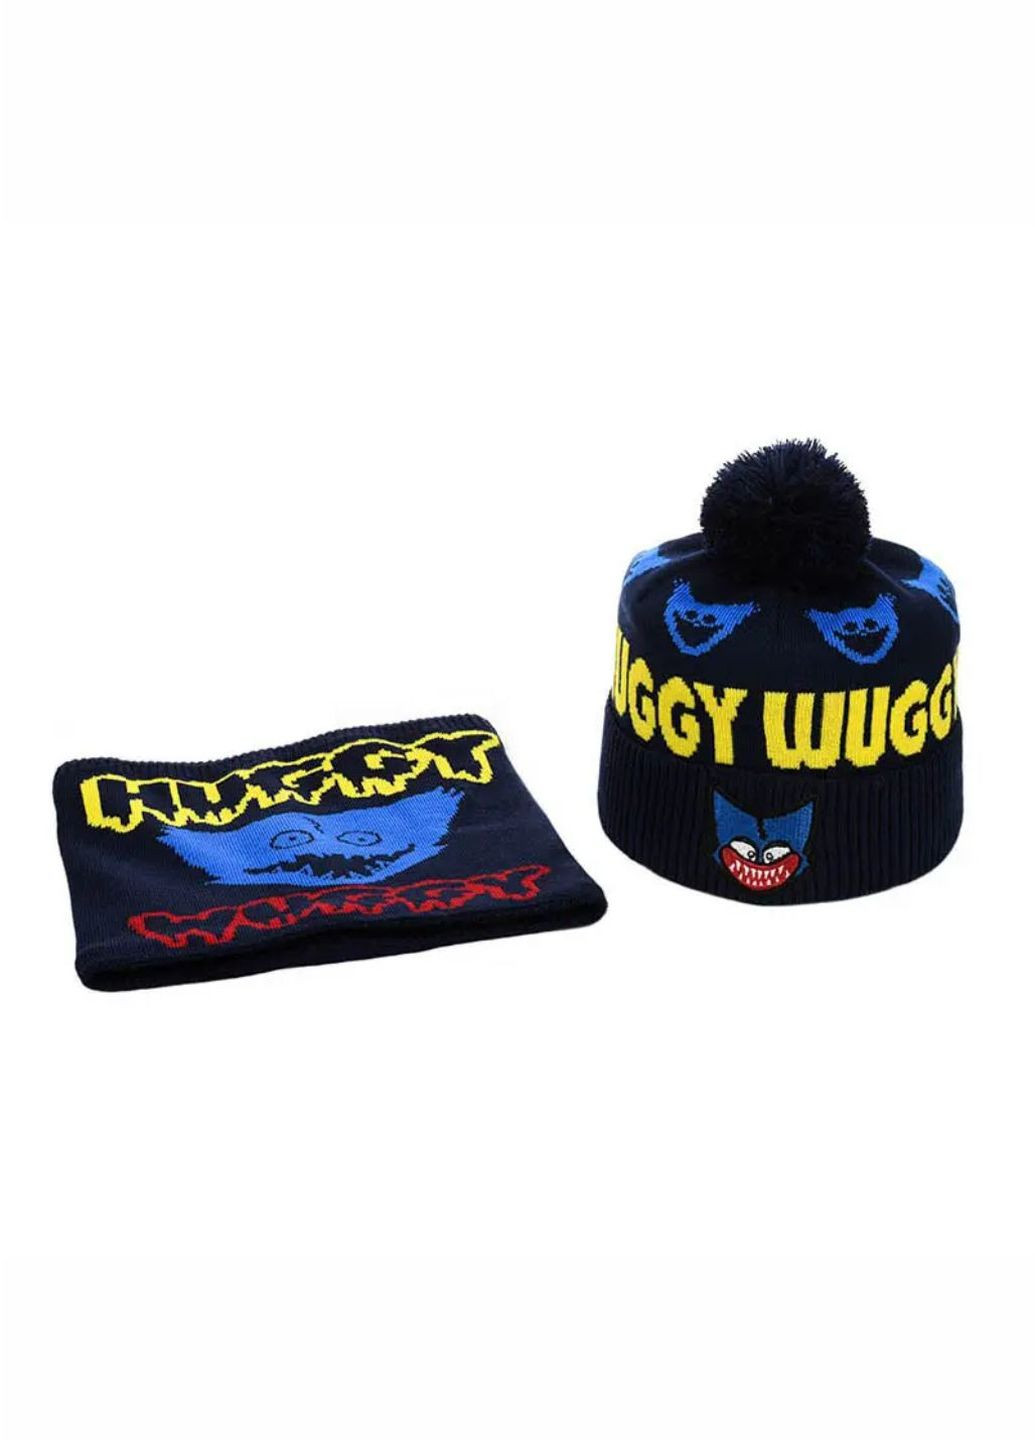 Детский зимний комплект шапка с помпоном + снуд Хагги Вагги / Huggy Wuggy No Brand дитячій комплект шапка + снуд (277167389)